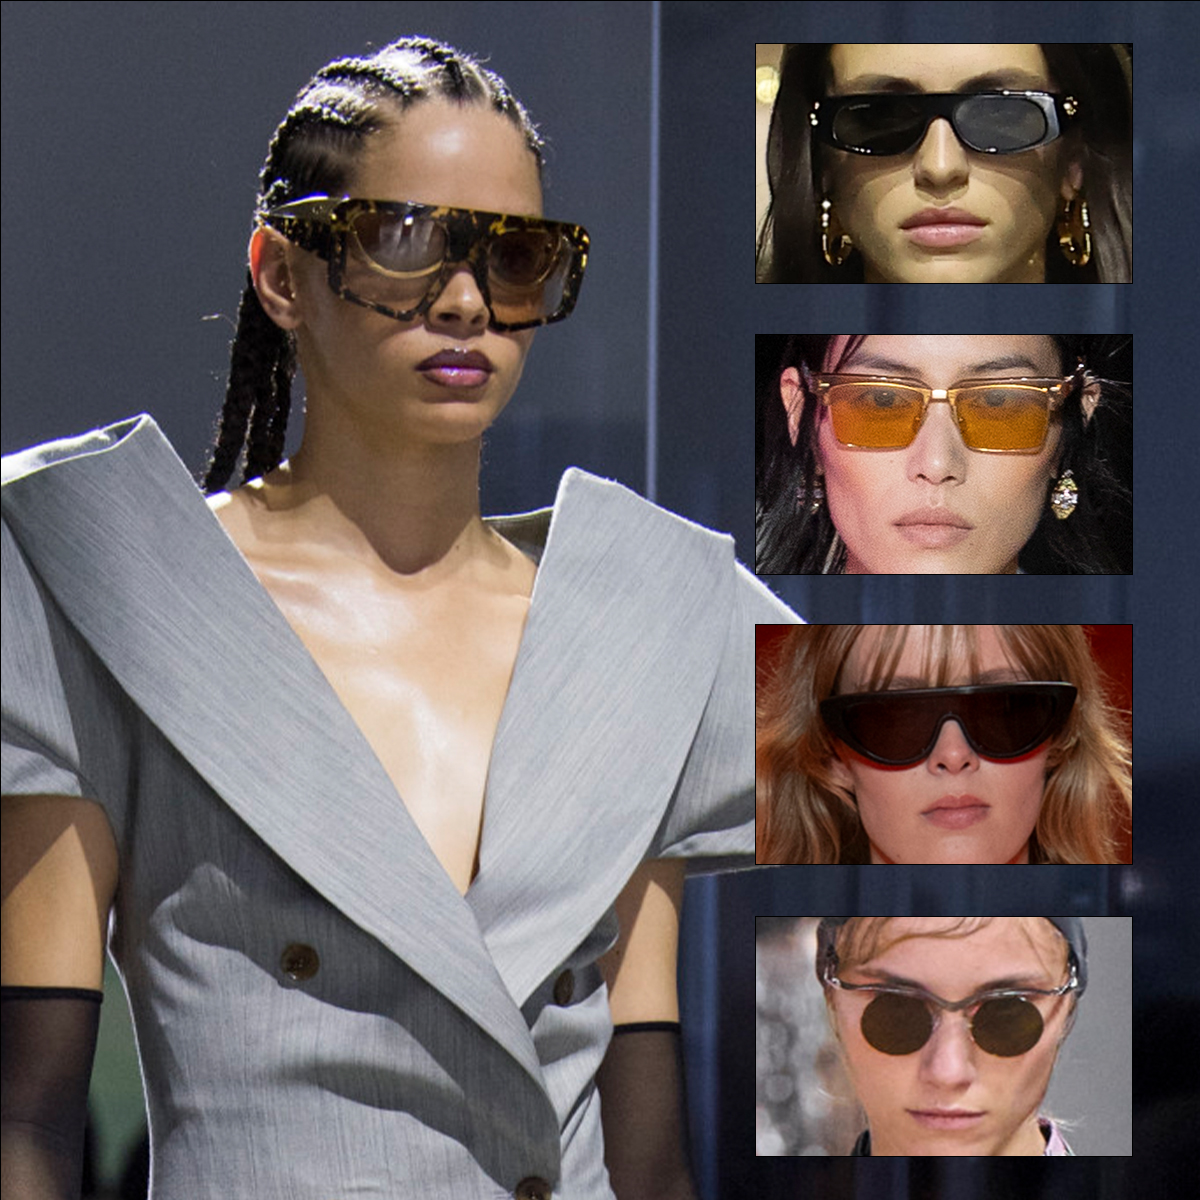 Hot Sunglasses Women Popular Designer Retro Men Summer Style Sun Glasses